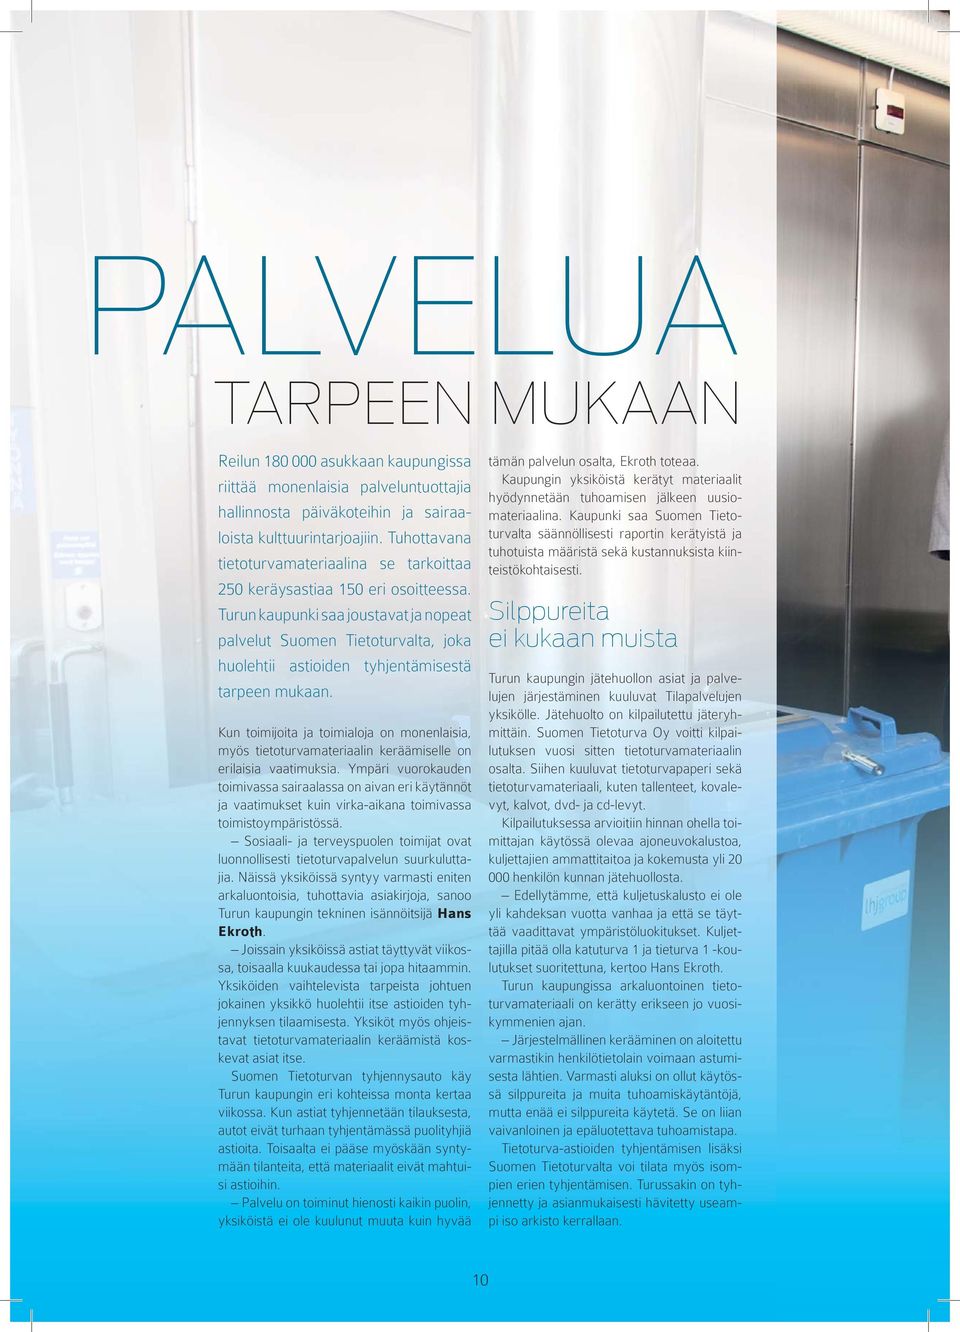 Turun kaupunki saa joustavat ja nopeat palvelut Suomen Tietoturvalta, joka huolehtii astioiden tyhjentämisestä tarpeen mukaan.